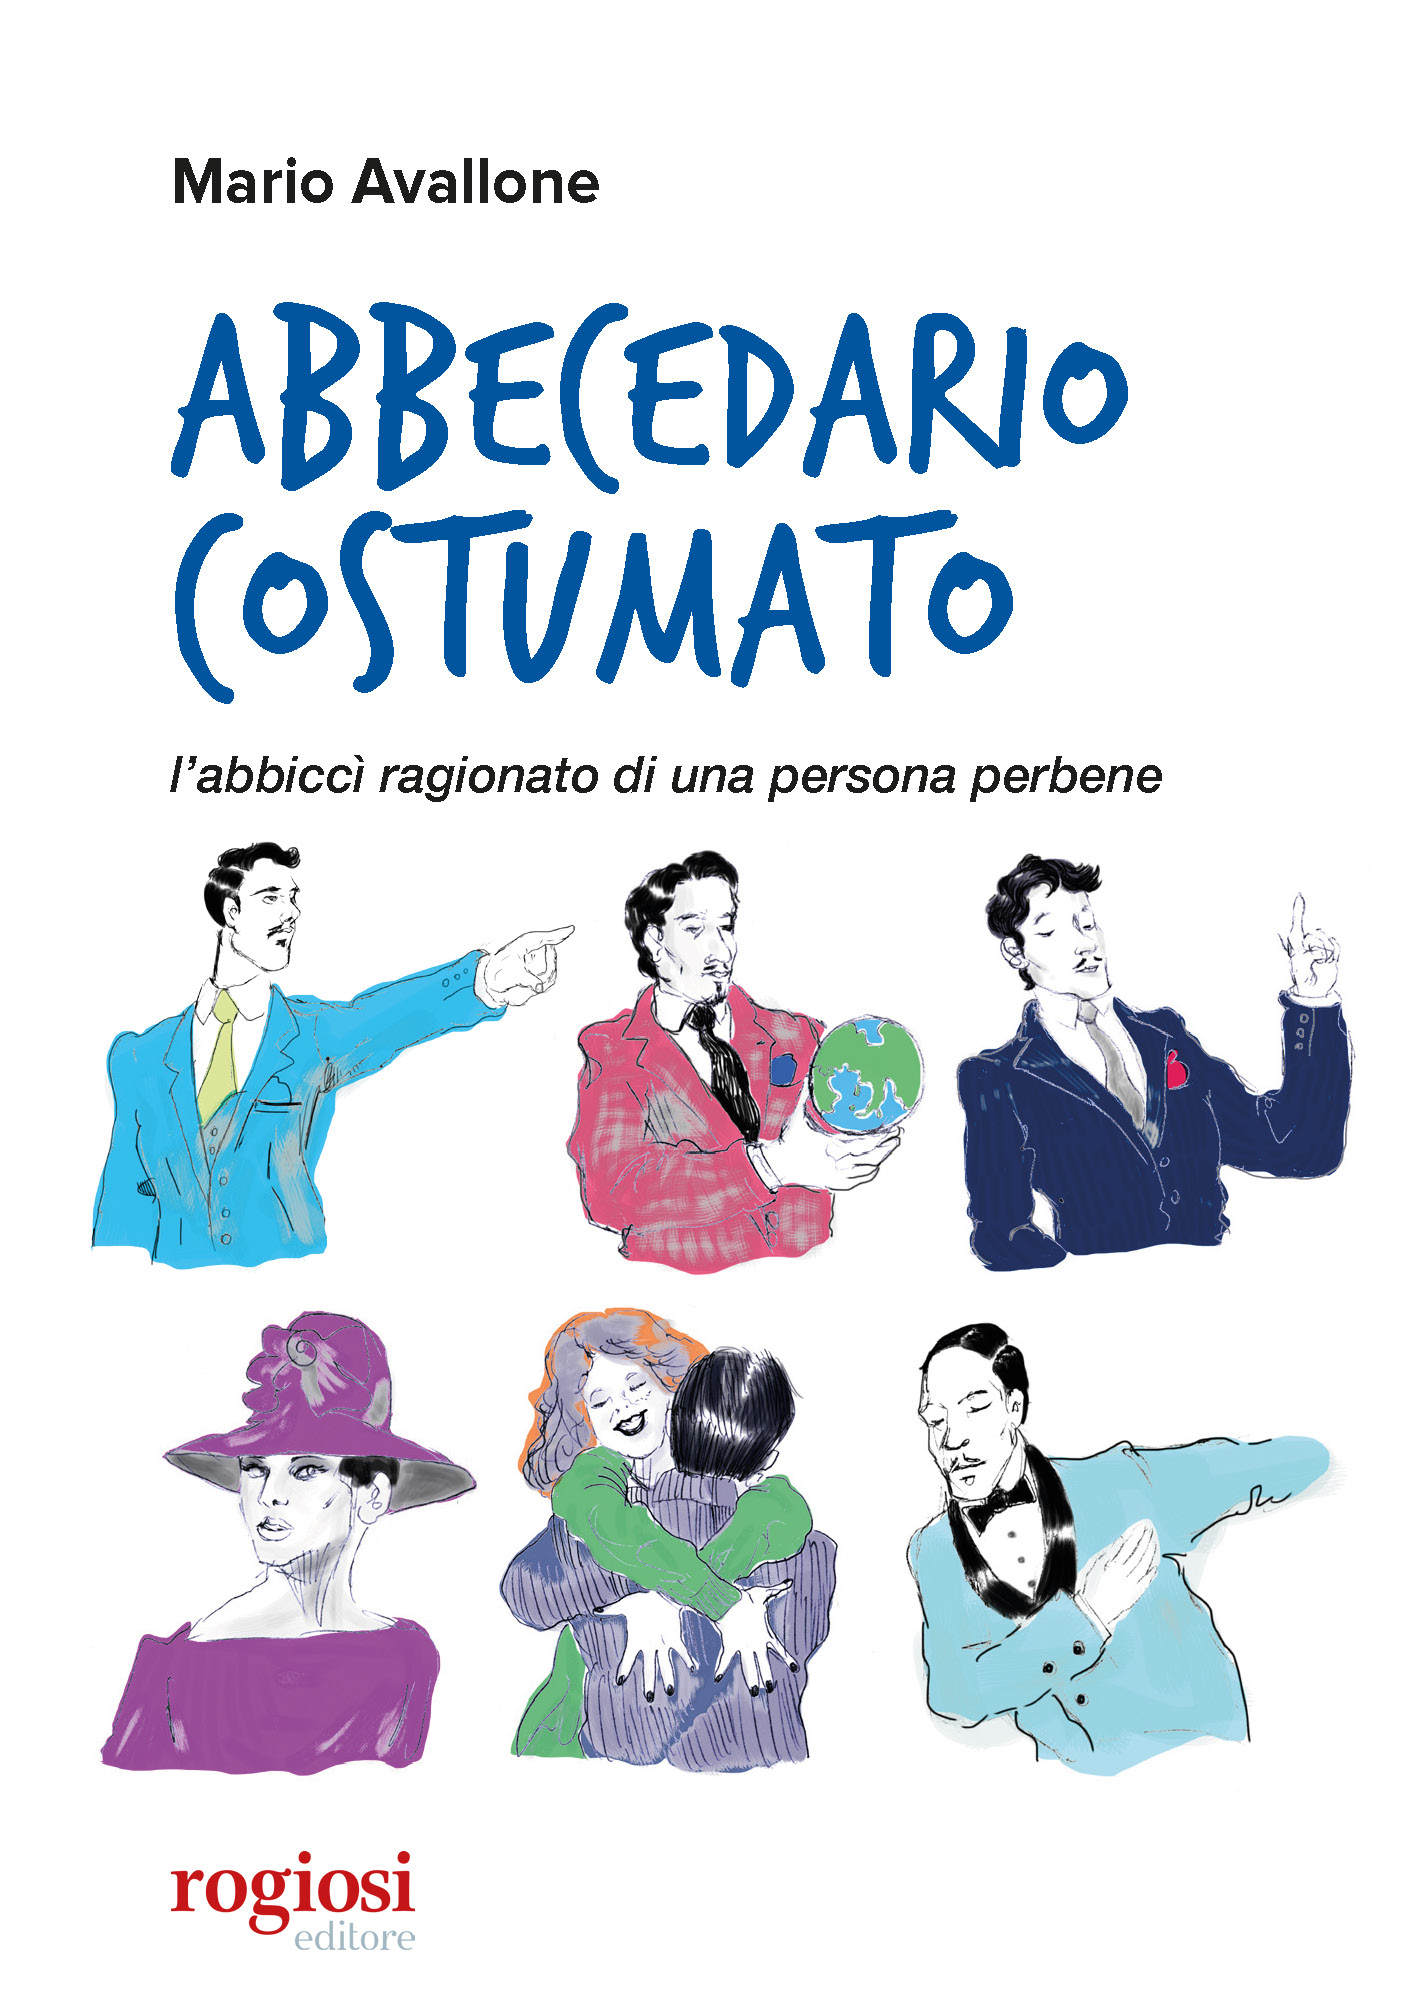 Rogiosi Editore presenta 'Abbecedario costumato' il libro di Mario Avallone